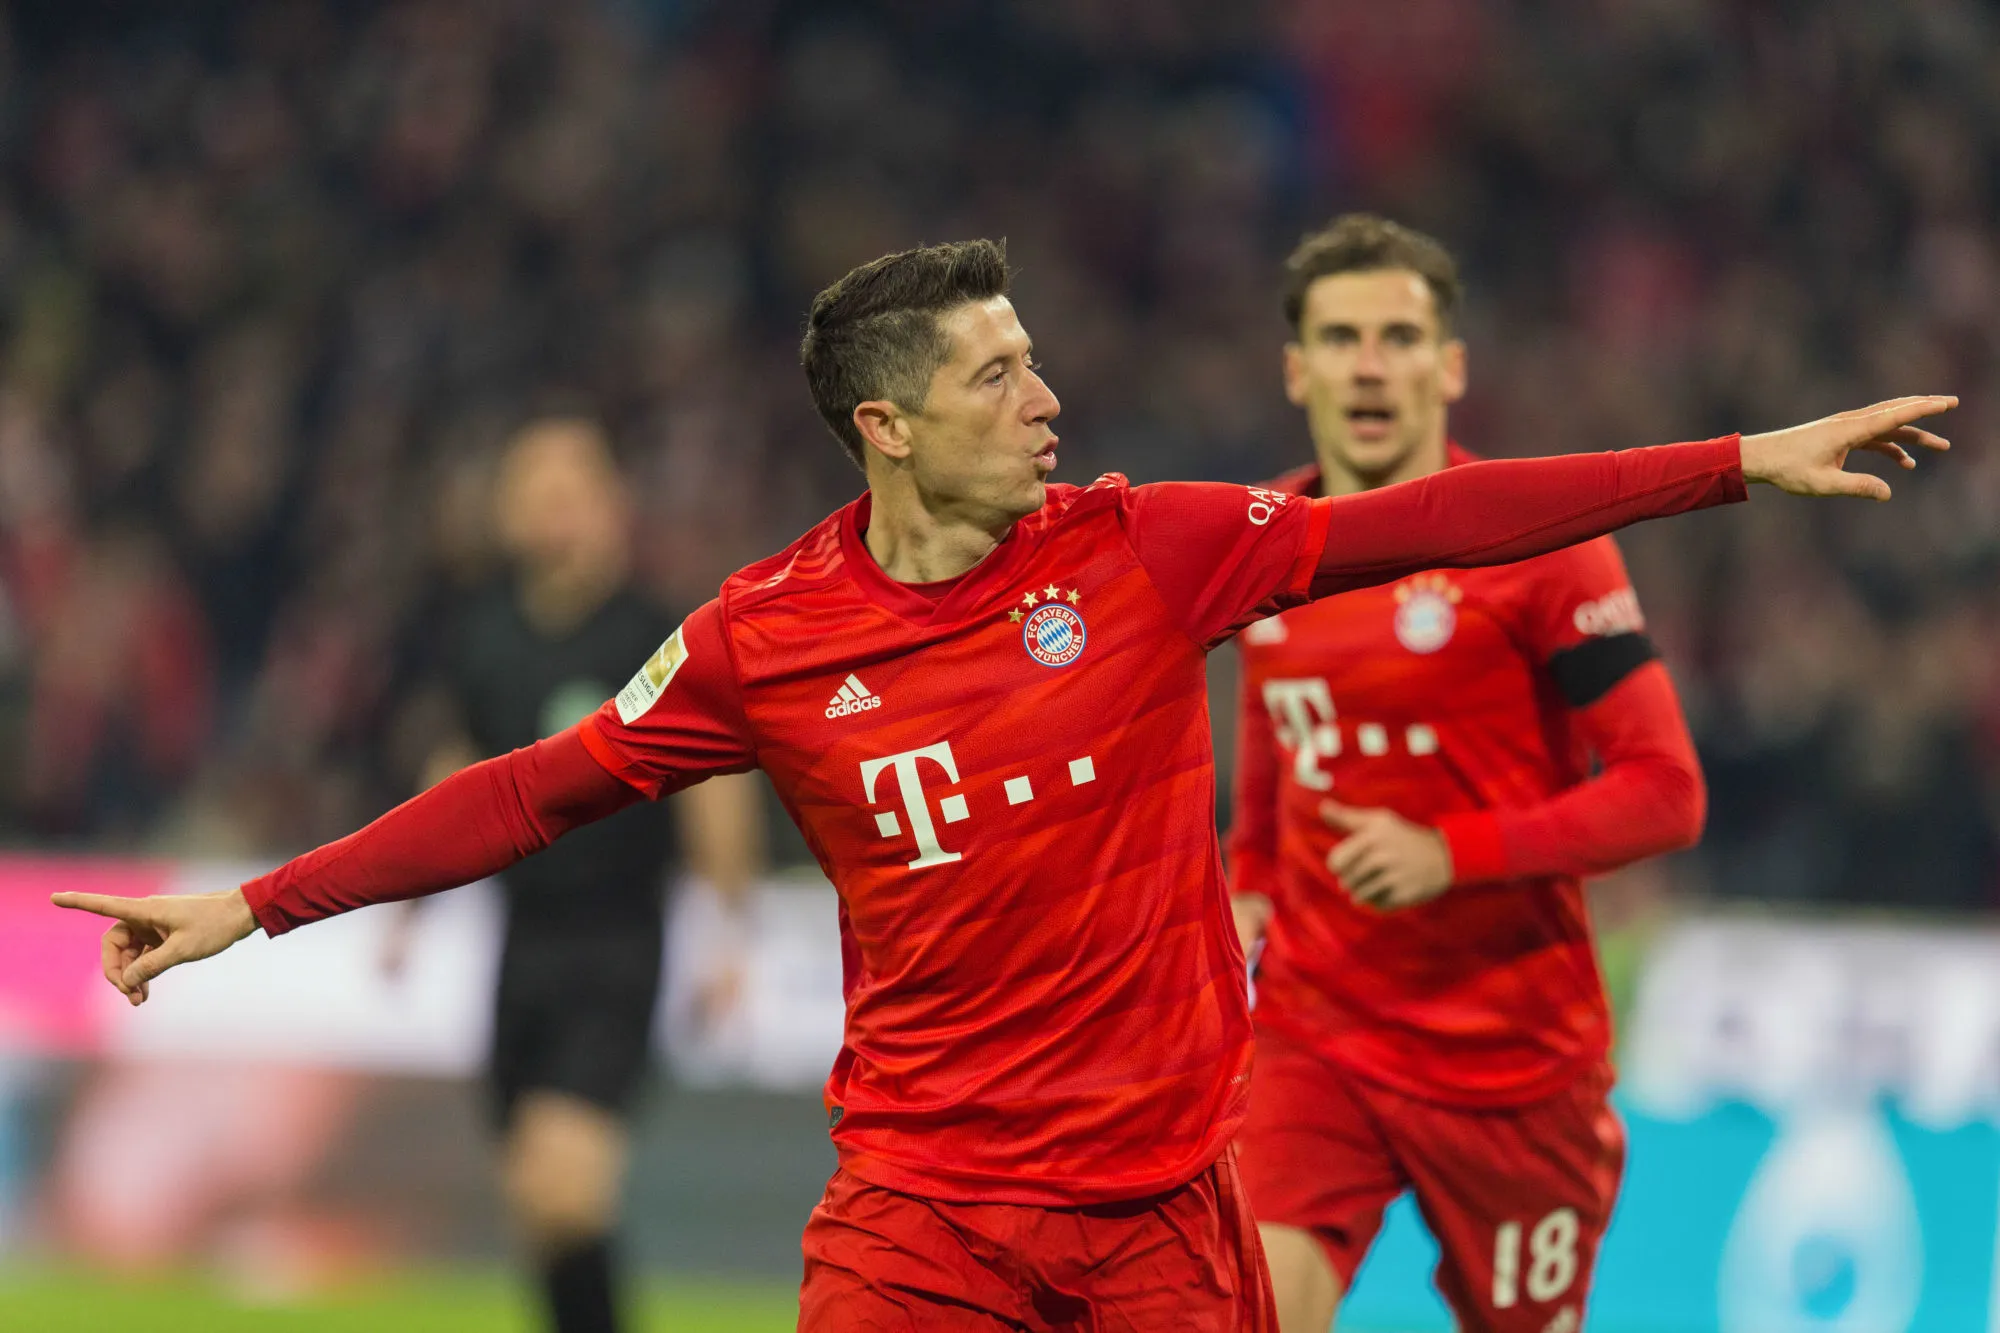 Après sa large victoire contre Schalke 04 à domicile, le Bayern Munich se rapproche de la tête